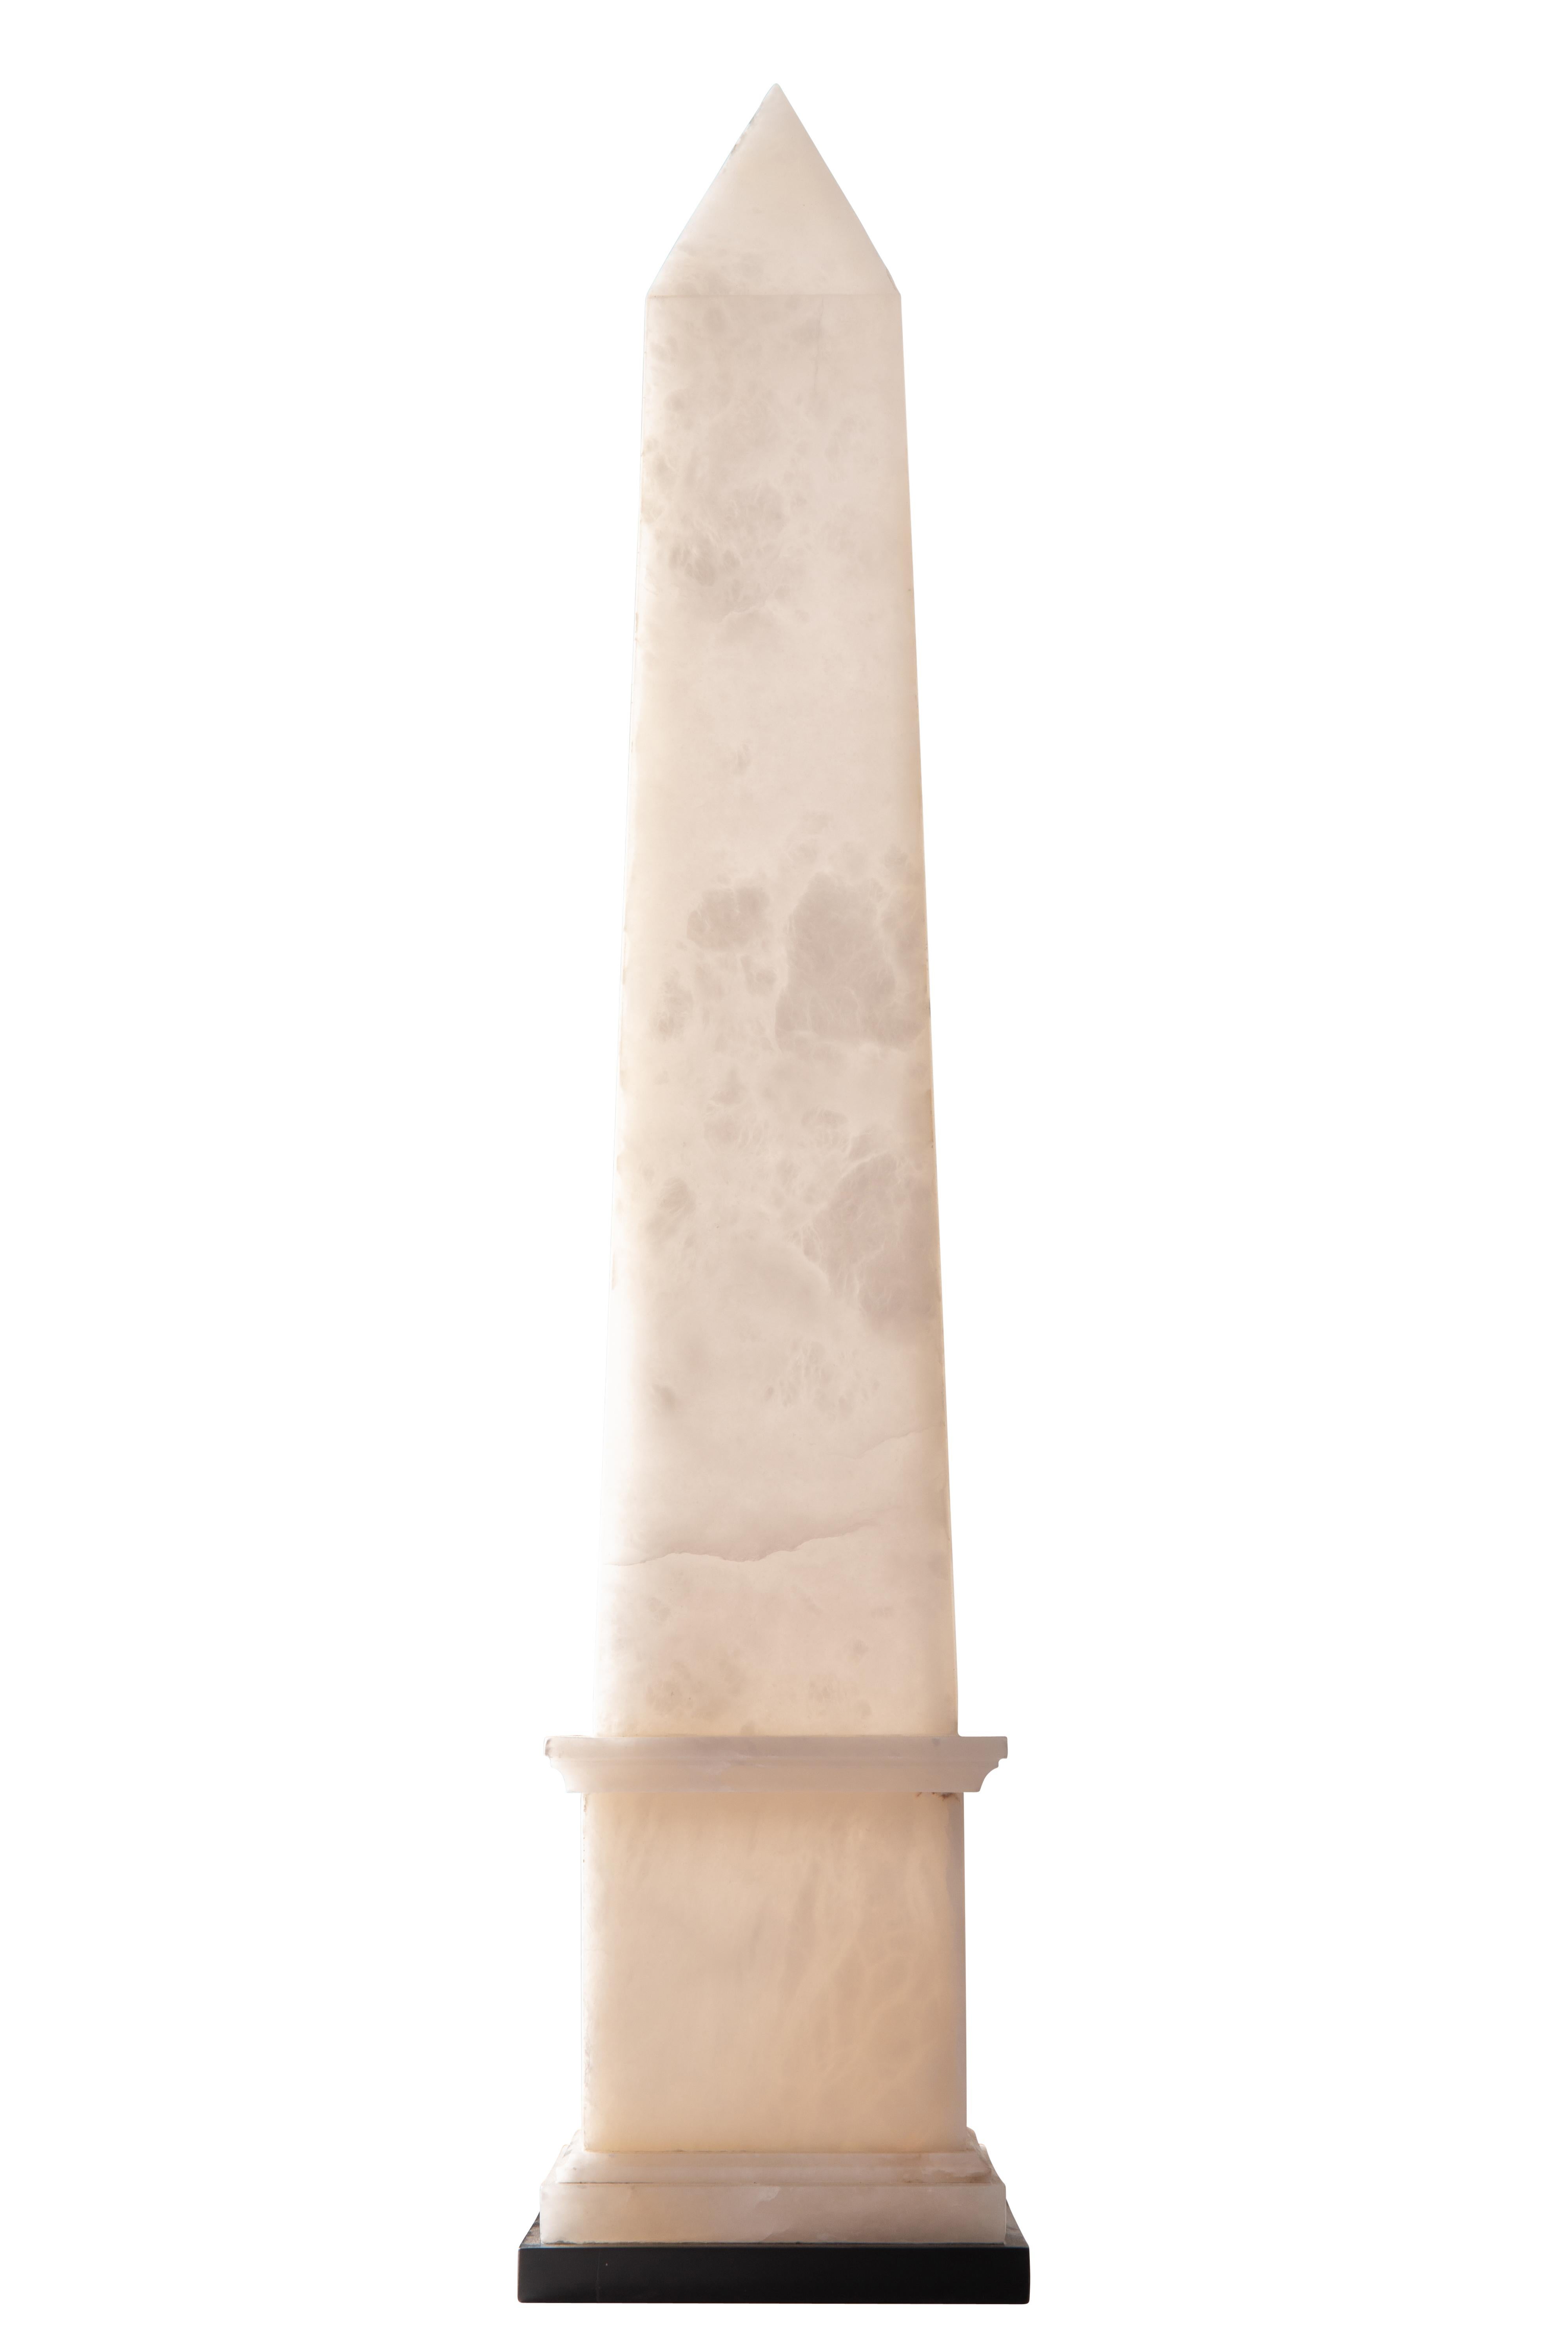 Zeitgenössische Obelisken-Lampe aus weißem Alabaster, entworfen und hergestellt von Christian Caudron, Meilleur Ouvrier de France 2015*, in seiner Pariser Werkstatt.

Der Obelisk ist aus Alabaster, einem durchscheinenden und geäderten, matten Stein,